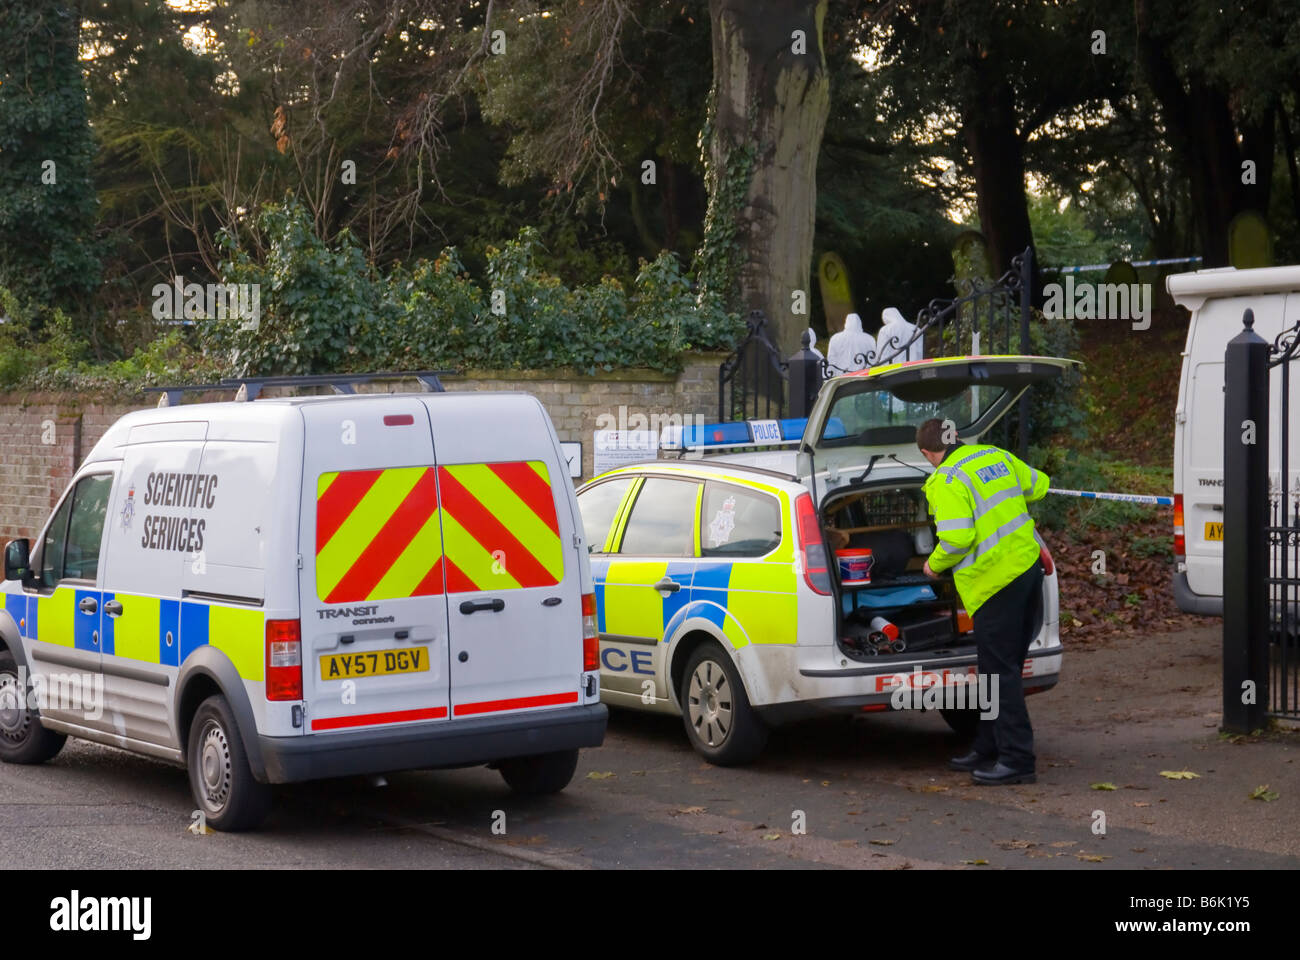 La polizia e gli ufficiali forensi alla ricerca di indizi dopo un crimine è stato commesso in un cimitero del Regno Unito Foto Stock